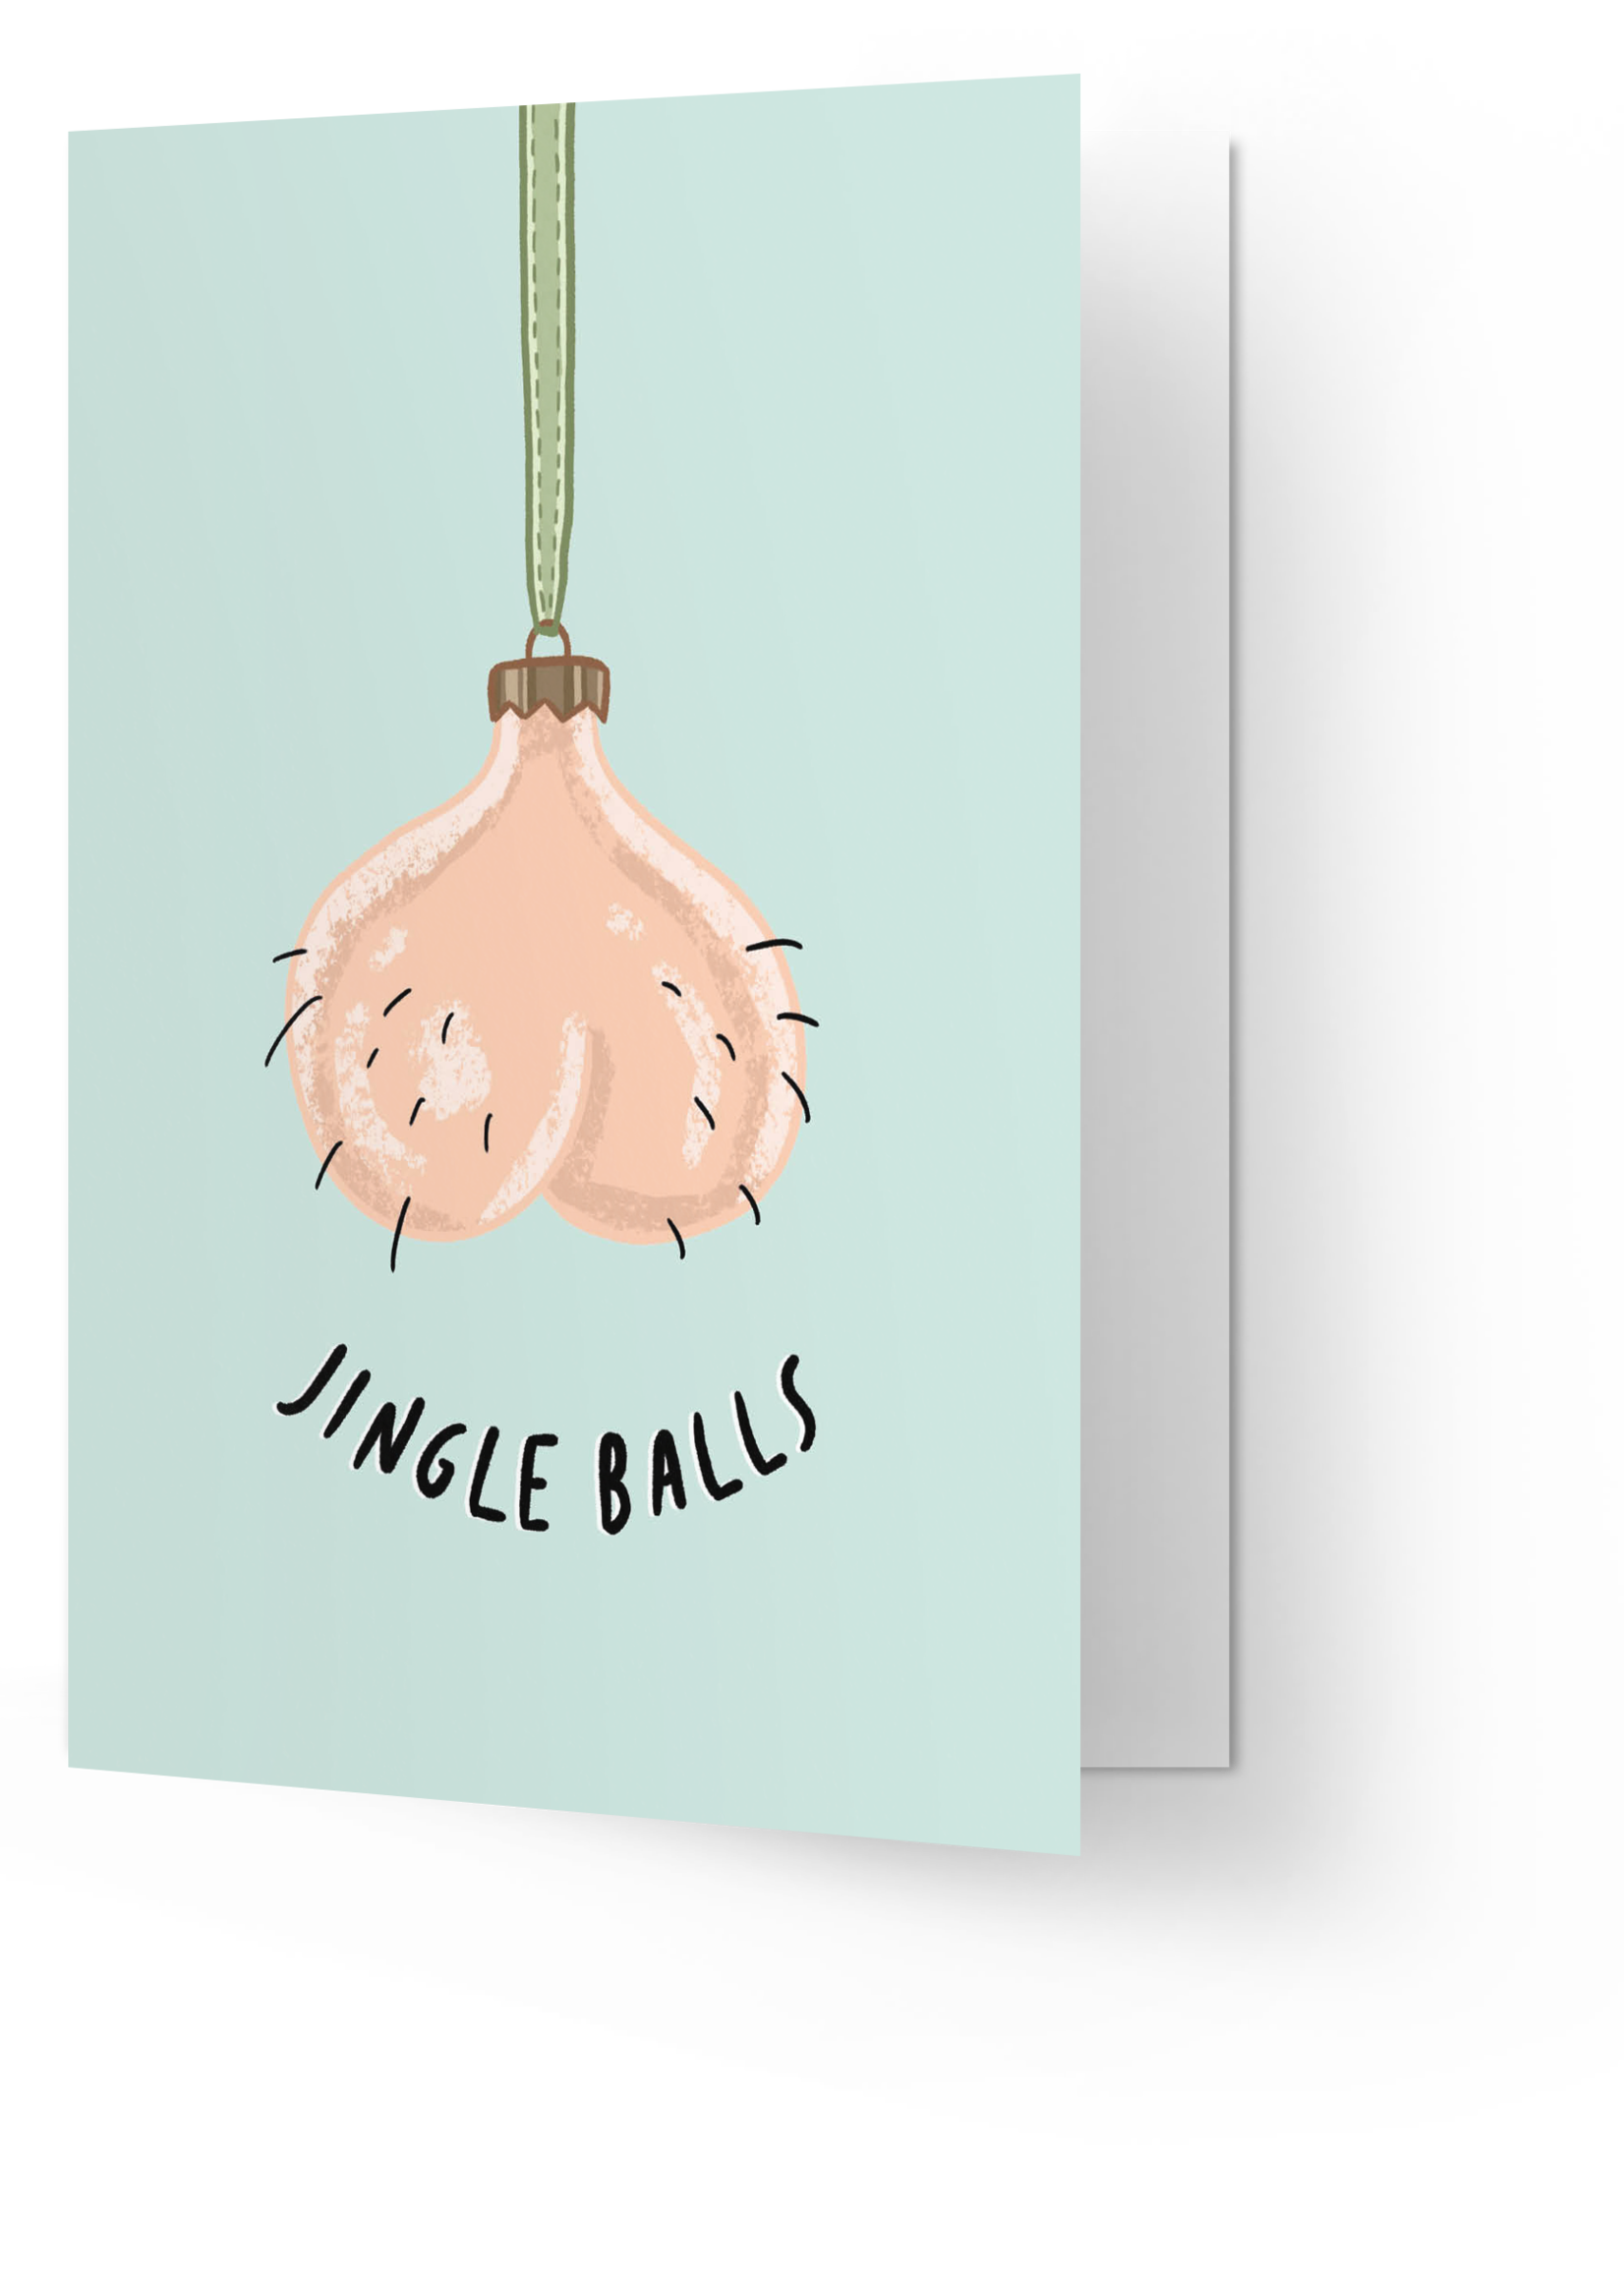 Jingle balls [double card]